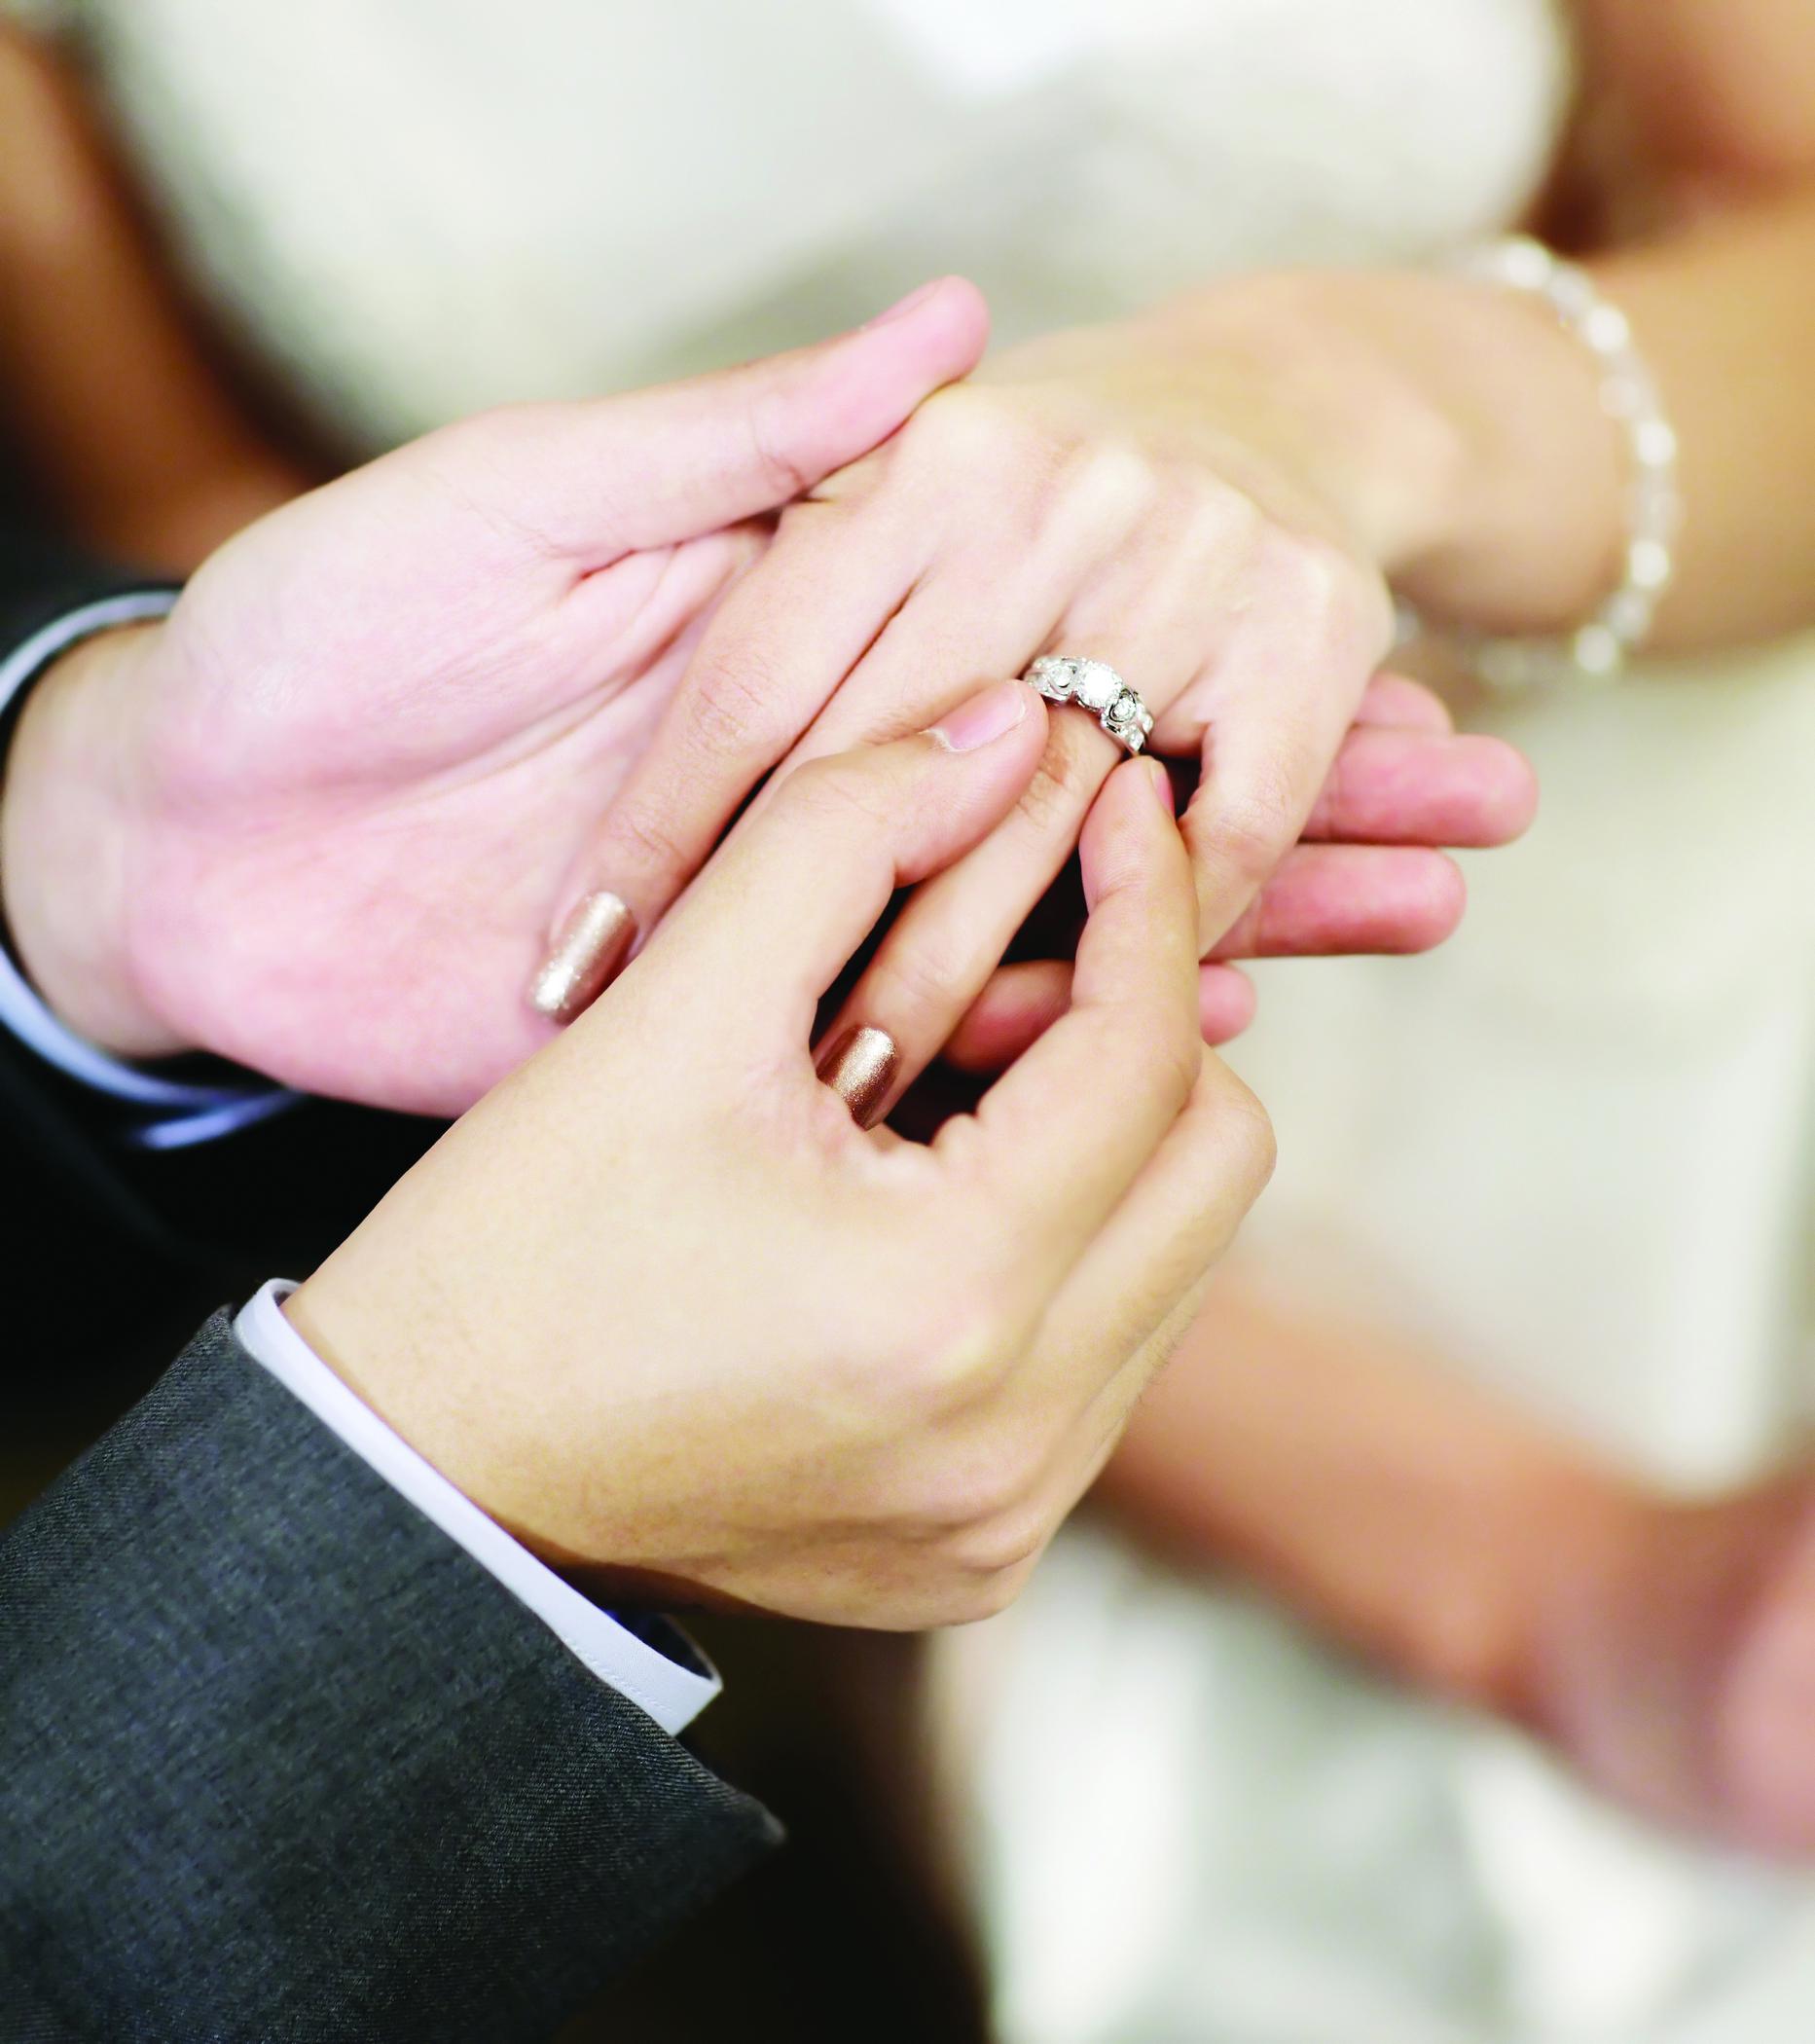 Вопрос замужества. Обручальные кольца на руках. Обручальное кольцо на пальце. Красивые обручальные кольца на руках. Свадебные кольца на пальцах.